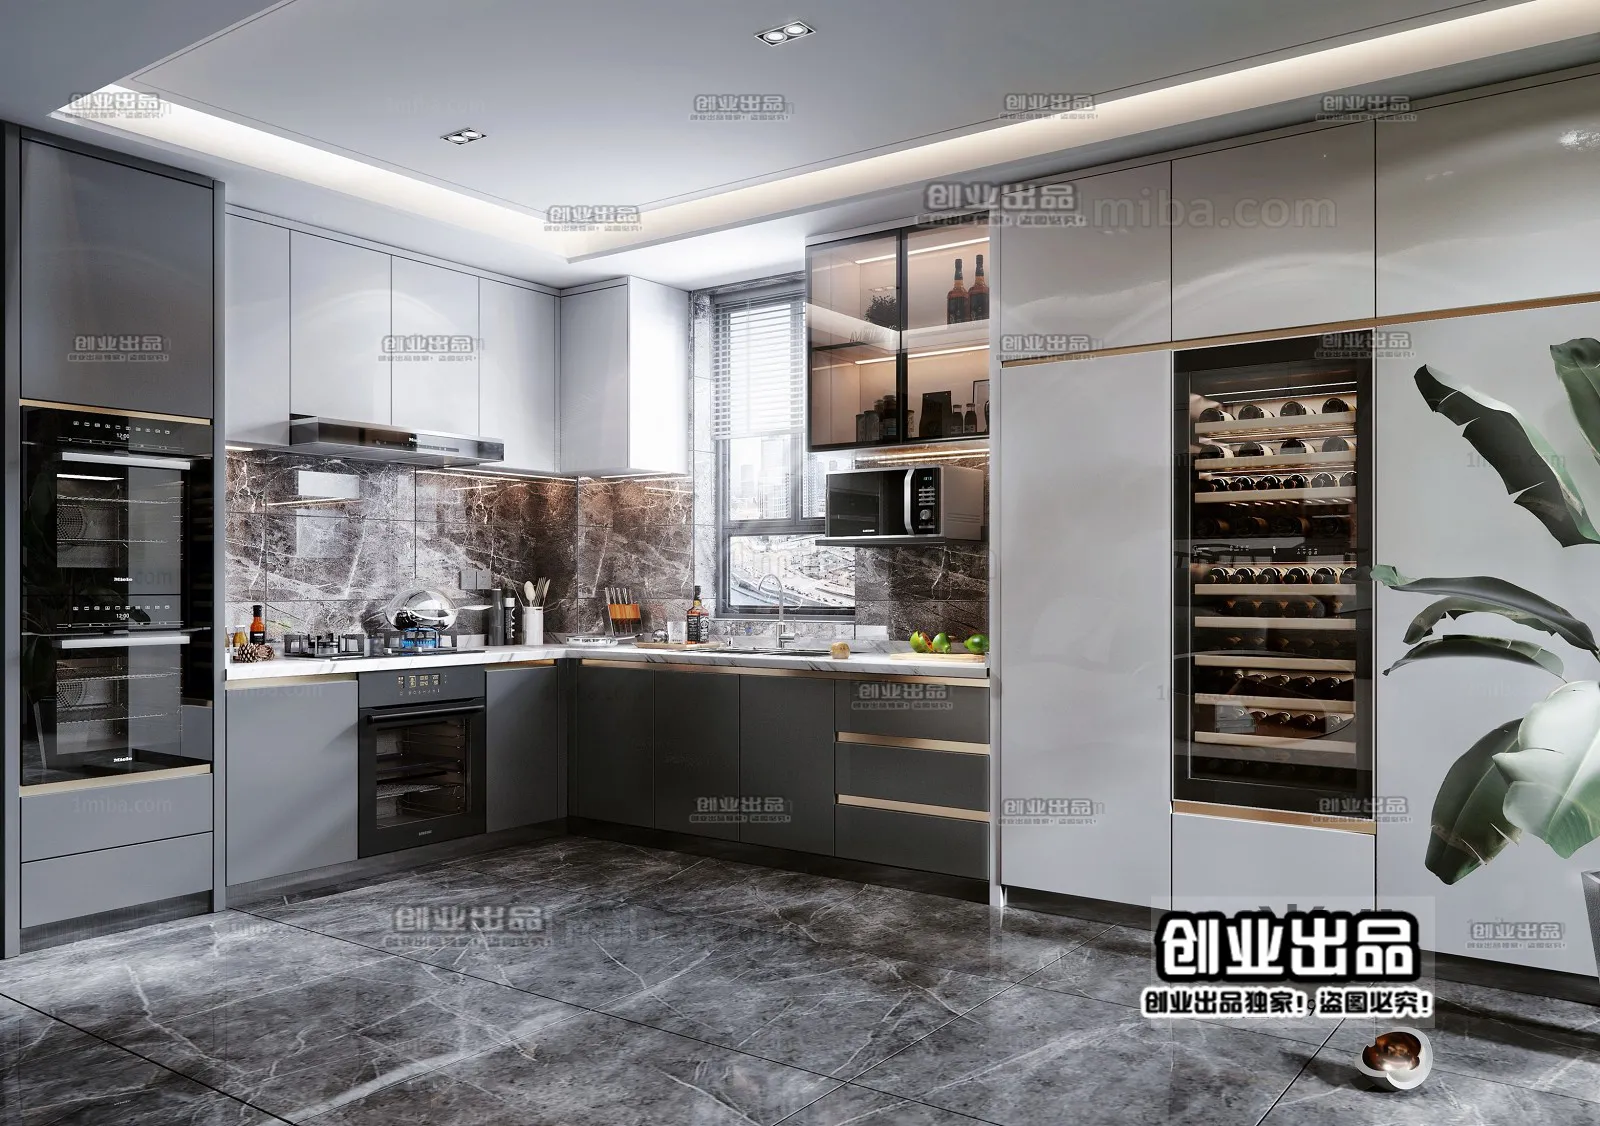 Kitchen – Modern Interior Design – 3D Models – 032